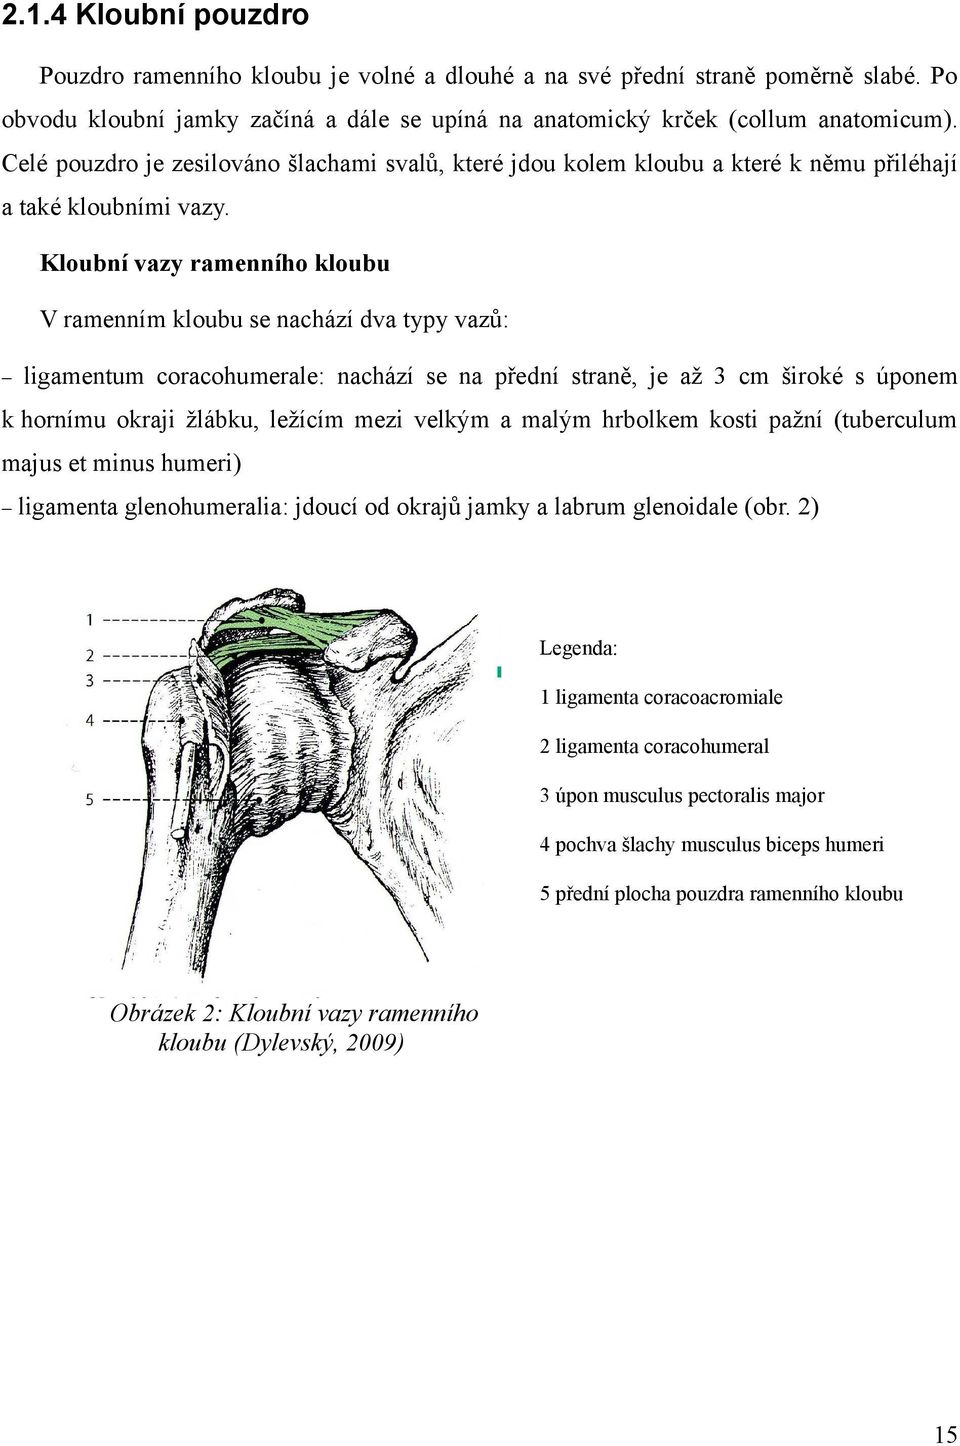 Kloubní vazy ramenního kloubu V ramenním kloubu se nachází dva typy vazů: ligamentum coracohumerale: nachází se na přední straně, je až 3 cm široké s úponem k hornímu okraji žlábku, ležícím mezi